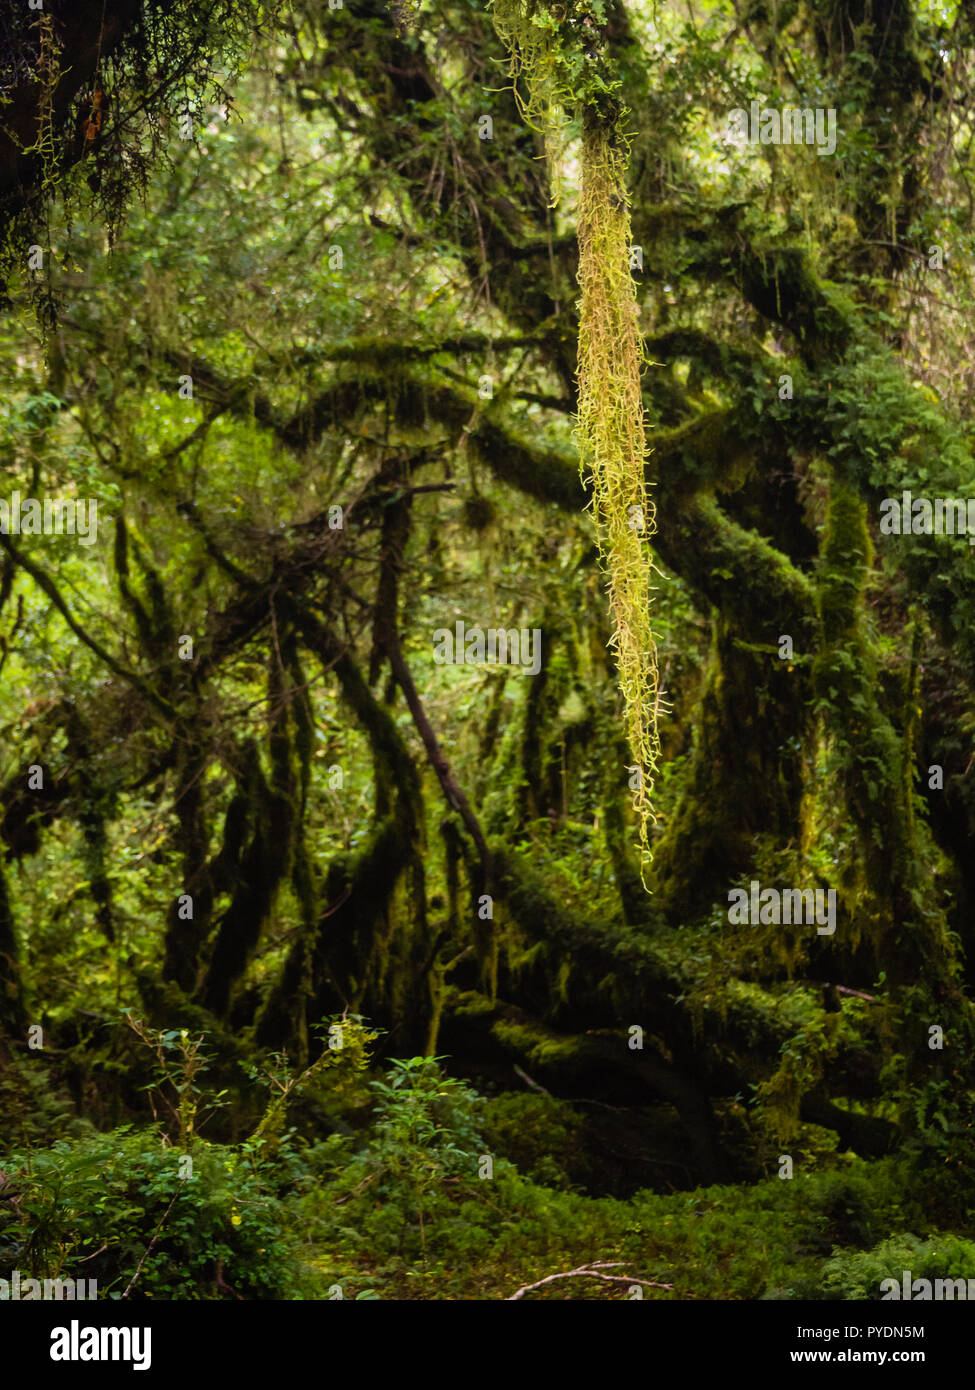 Detail Der verzauberte Wald in Carretera Austral, Bosque Encantado Chile Patagonien Stockfoto